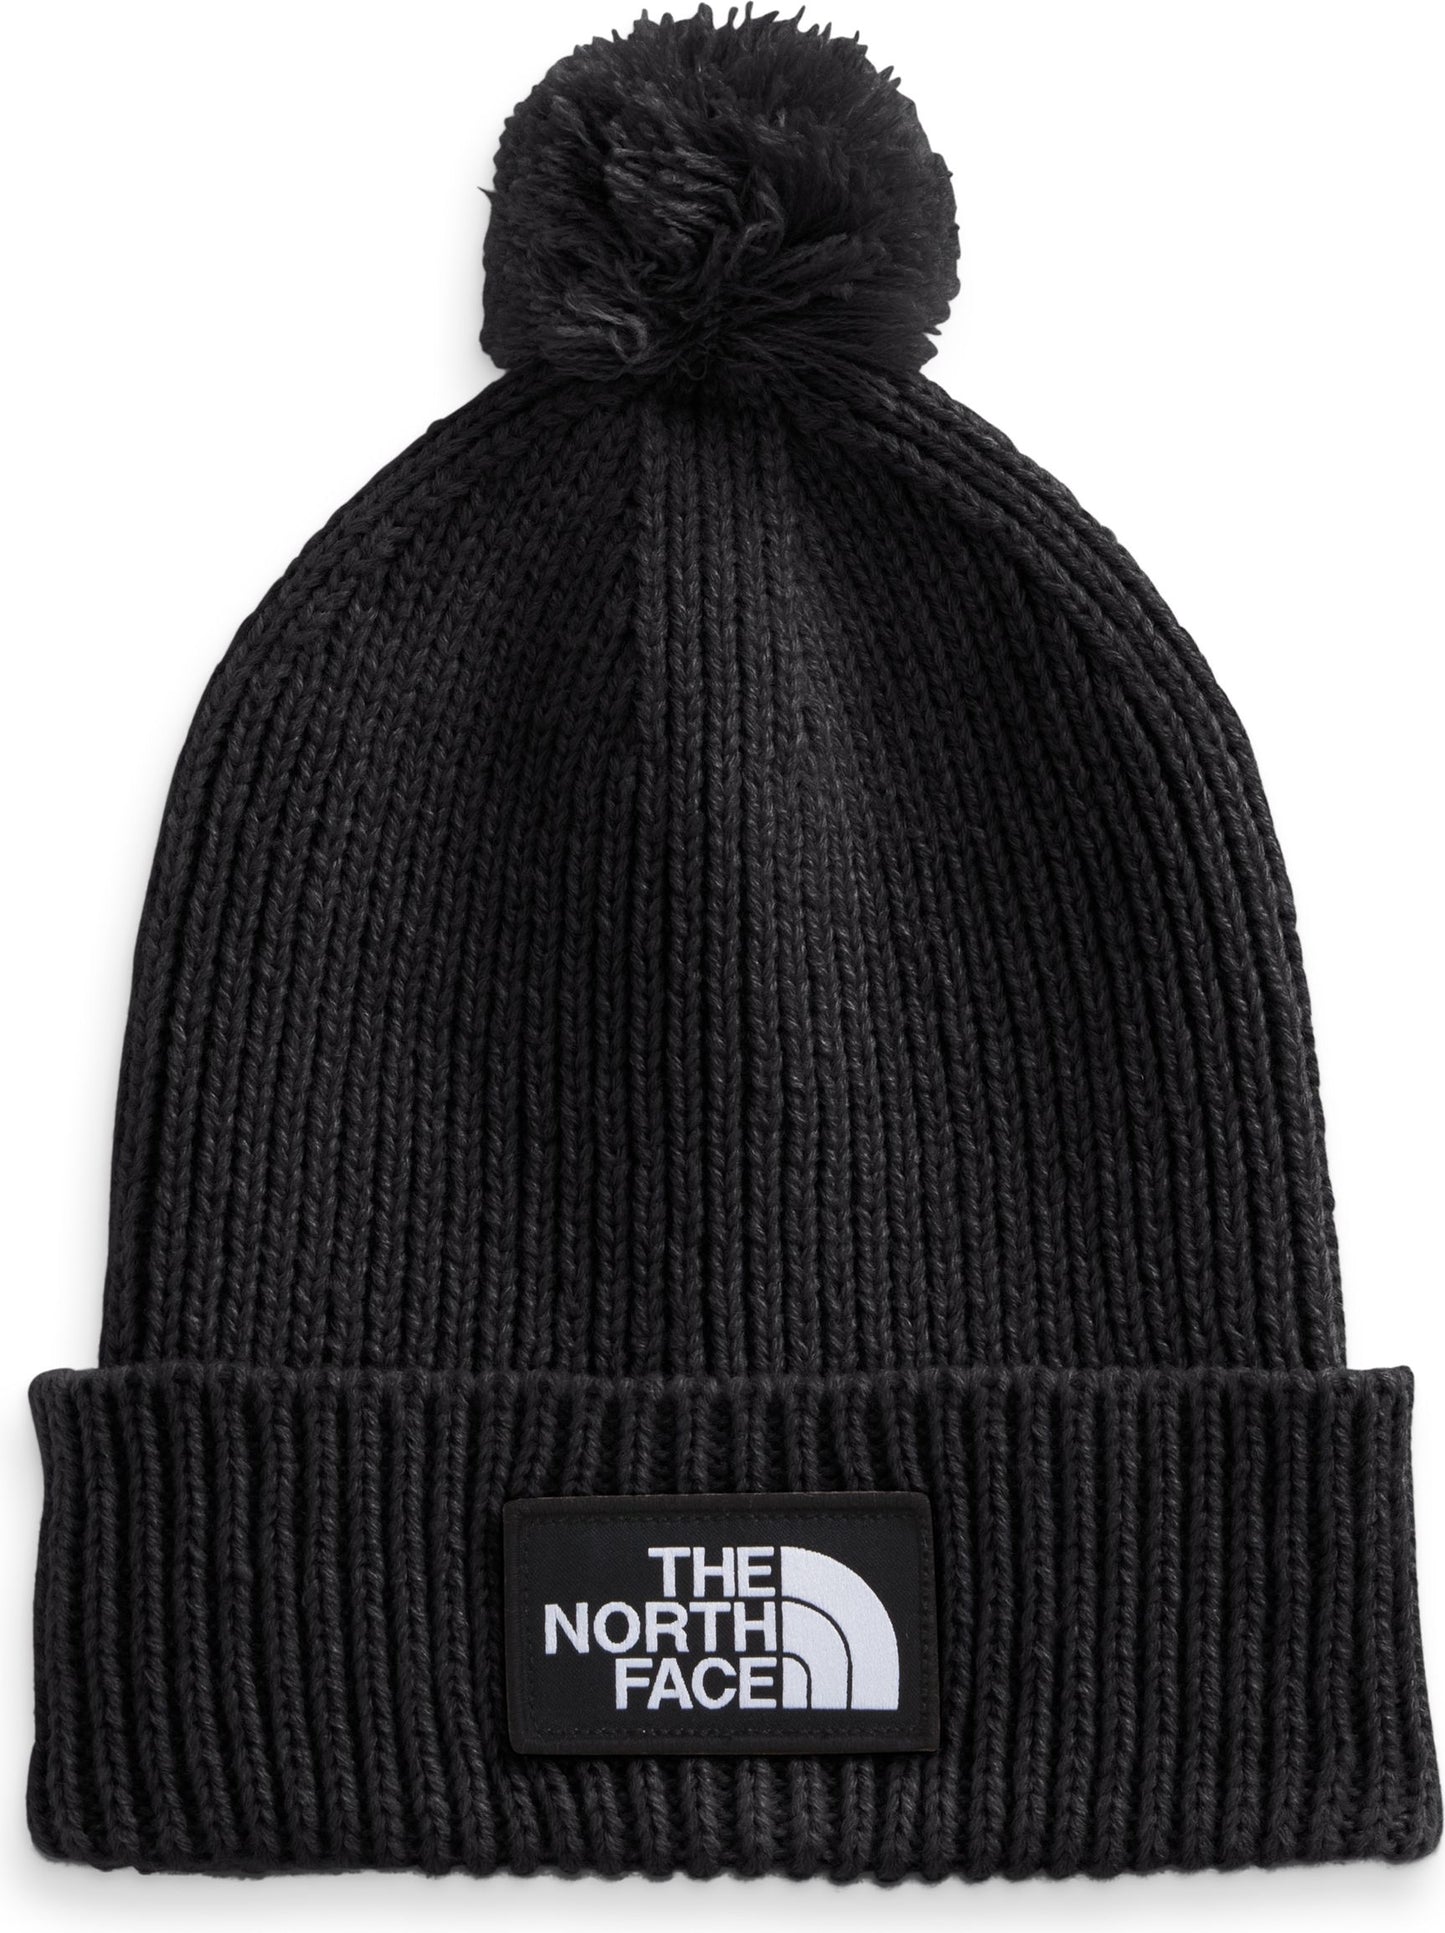 The North Face Accessories Tnf Logo Box Pom Beanie Tnf Black